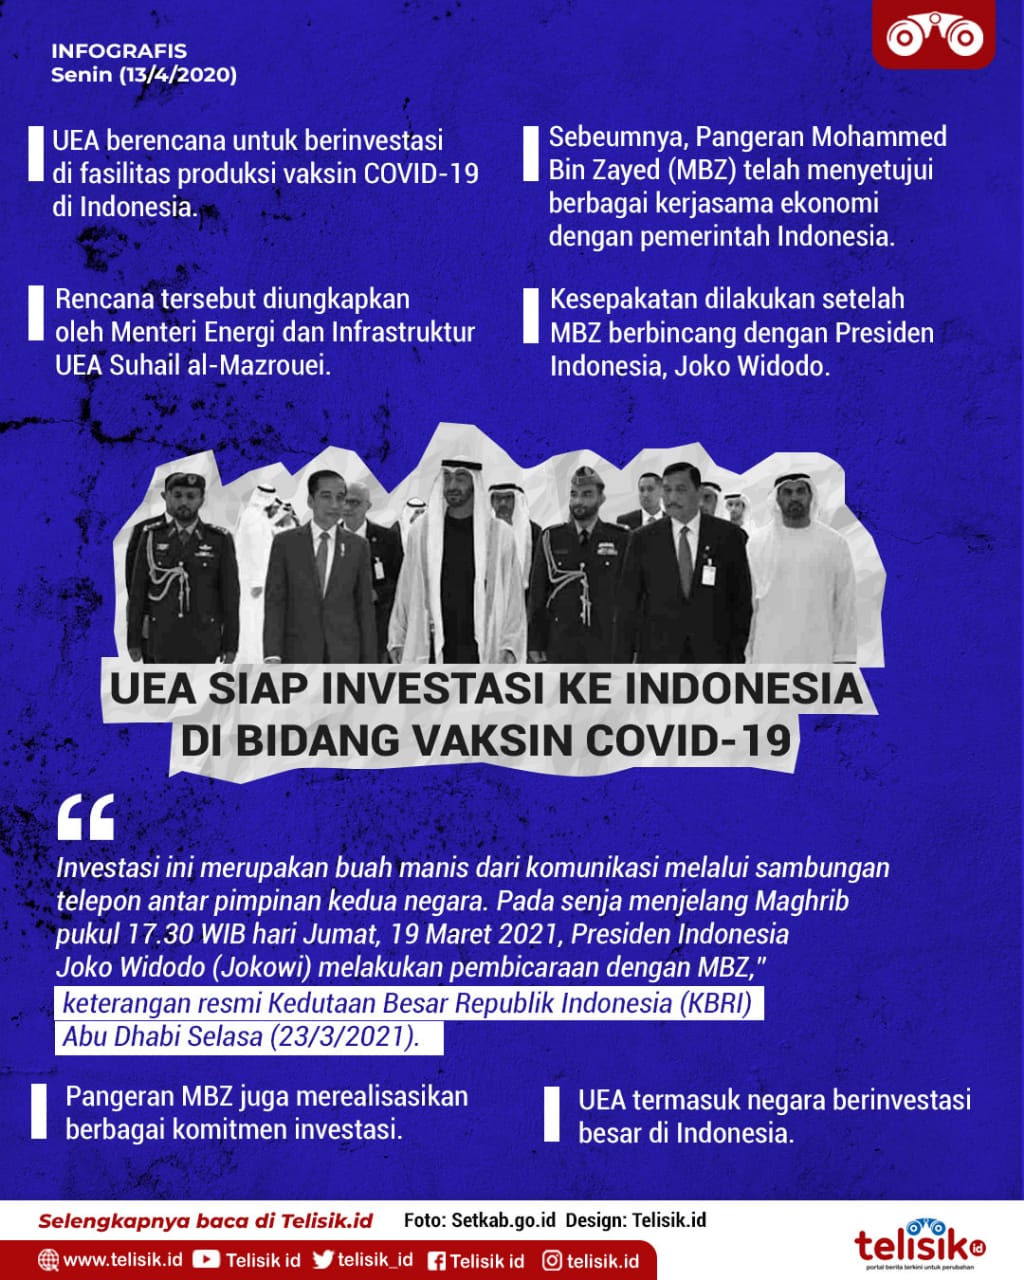 Infografis: UEA Siap Investasi ke Indonesia di Bidang Vaksin COVID-19